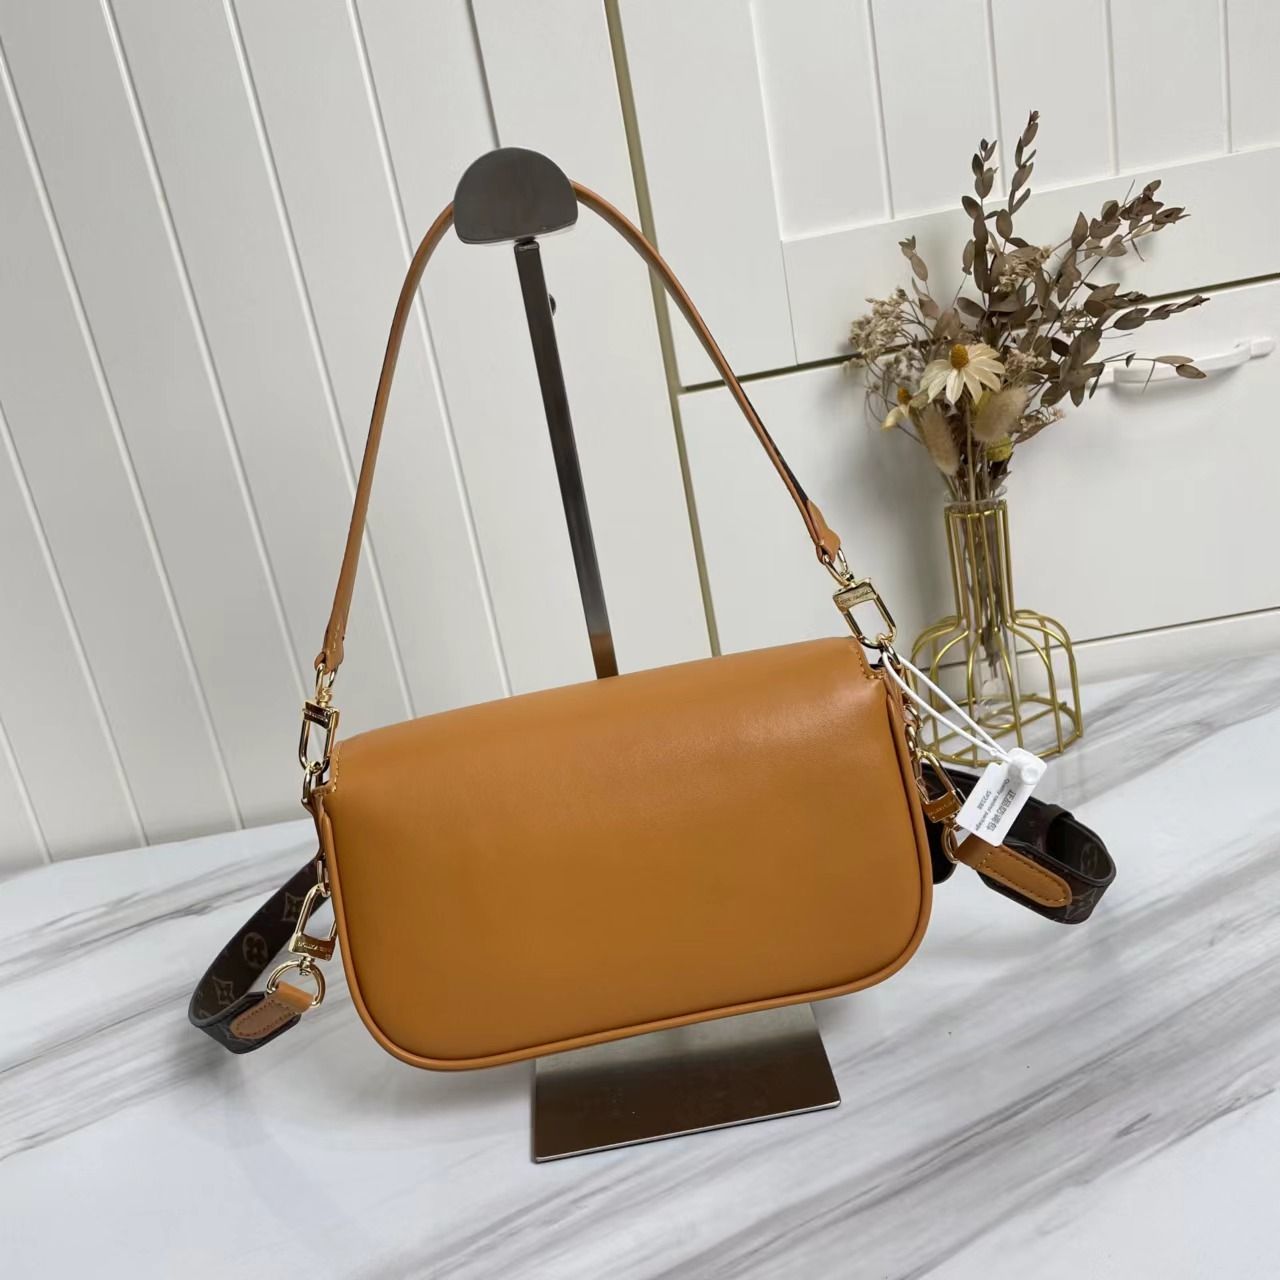 A bag Swing Fashion Leather 24 cm фото 6